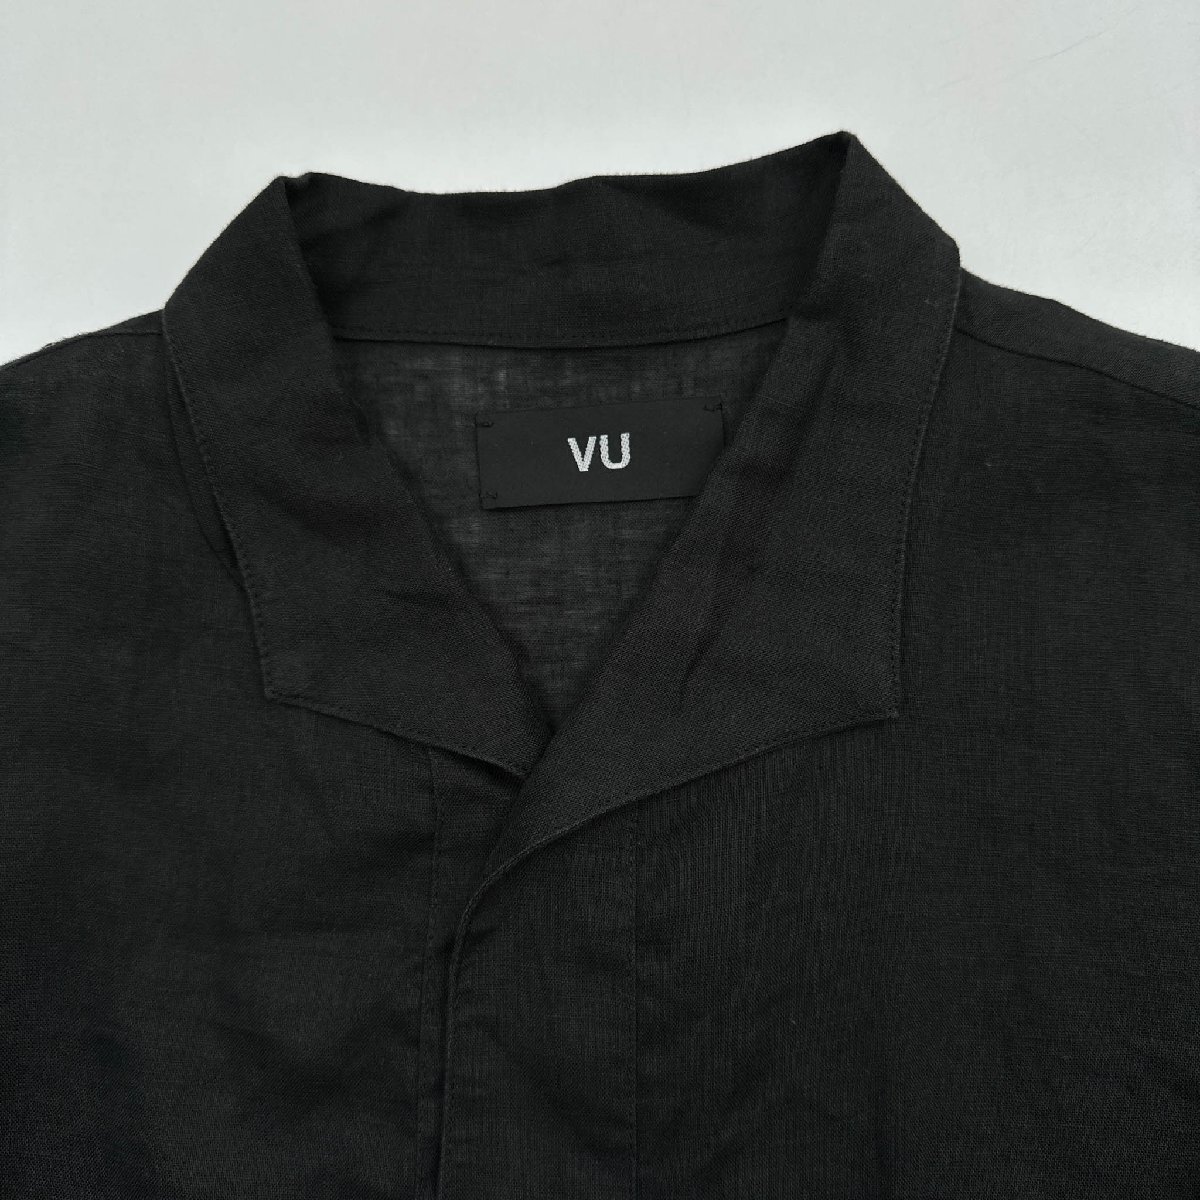 リネン100%◆VU ヴウ オープンカラー 半袖 5分丈 シャツ 麻 サイズ 2/ブラック 黒/メンズ 日本製_画像5